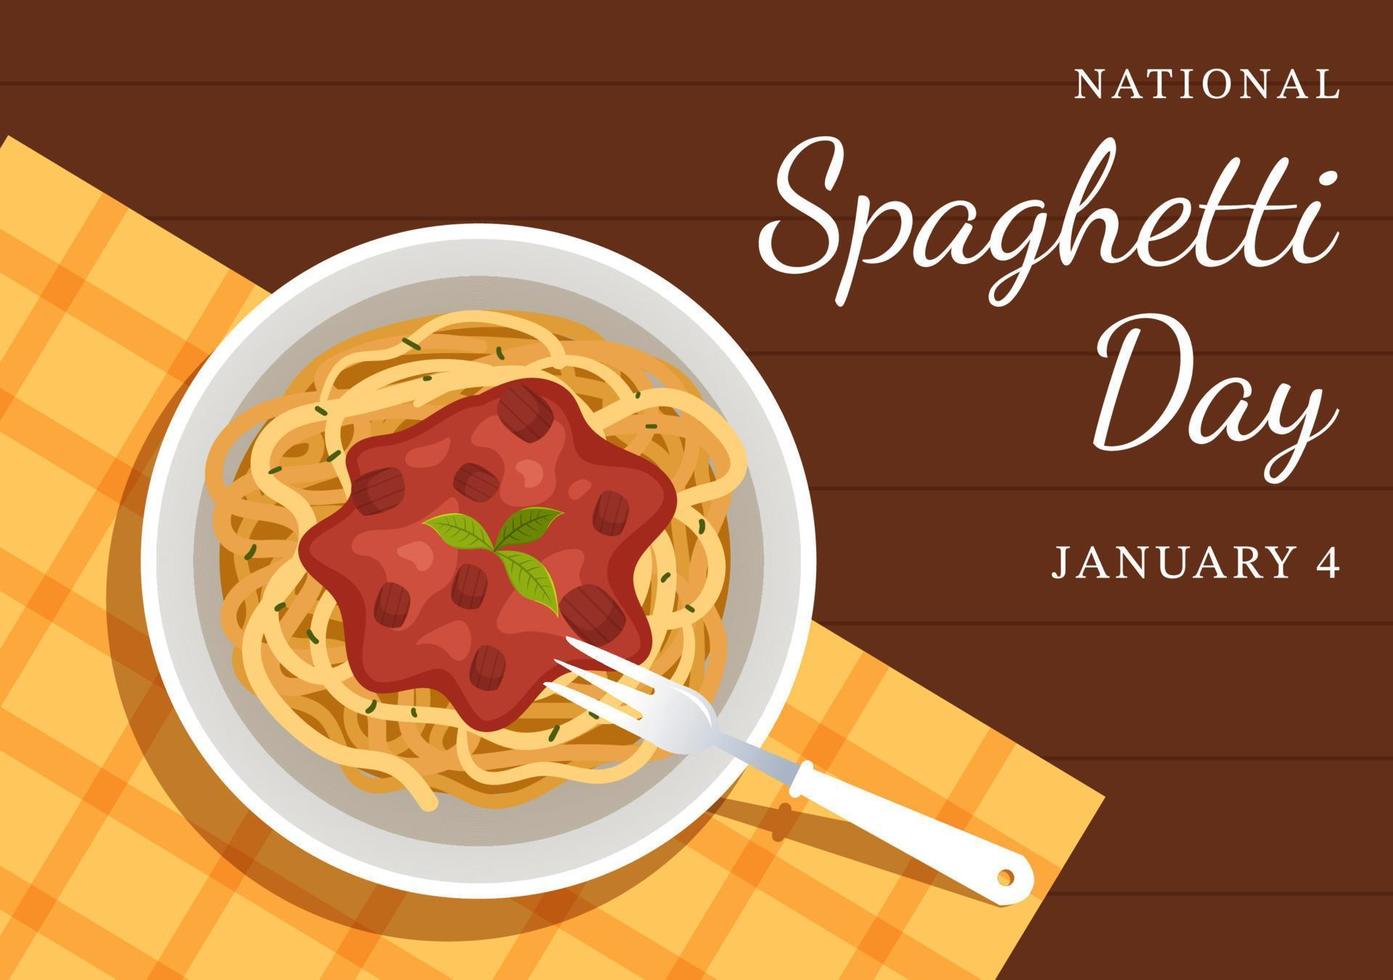 nationaal spaghetti dag Aan 4e januari met een bord van Italiaans noedels of pasta verschillend gerechten in vlak tekenfilm hand- getrokken sjabloon illustratie vector